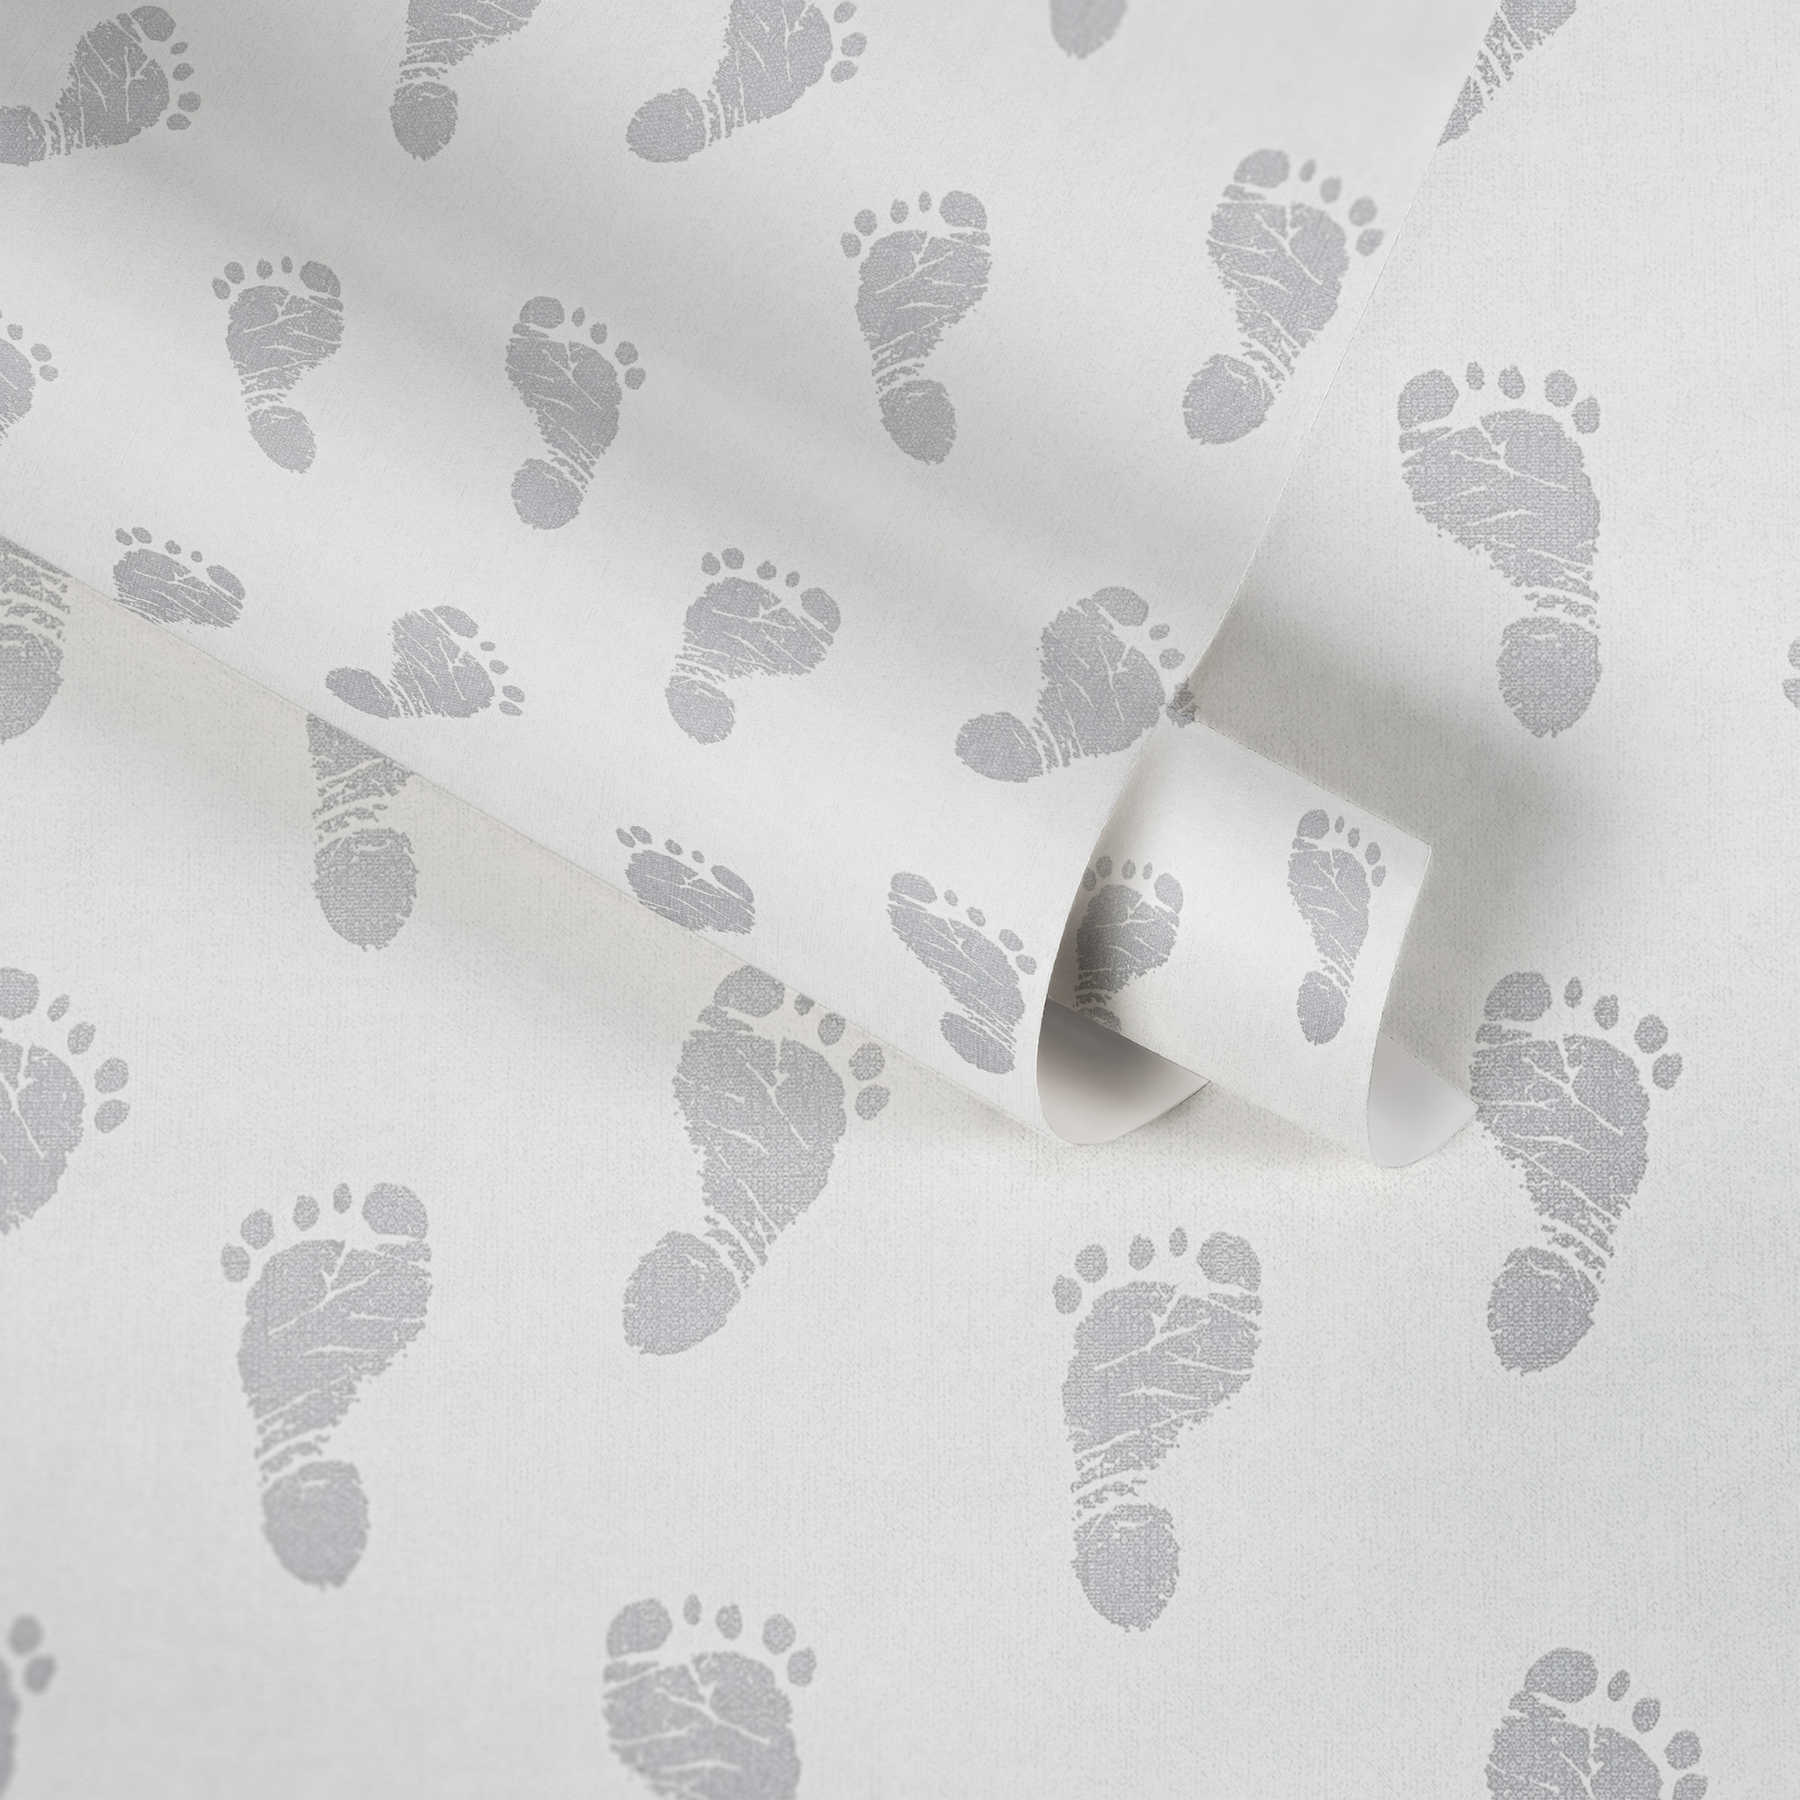             Baby behang met voetjes patroon - metallic, wit
        